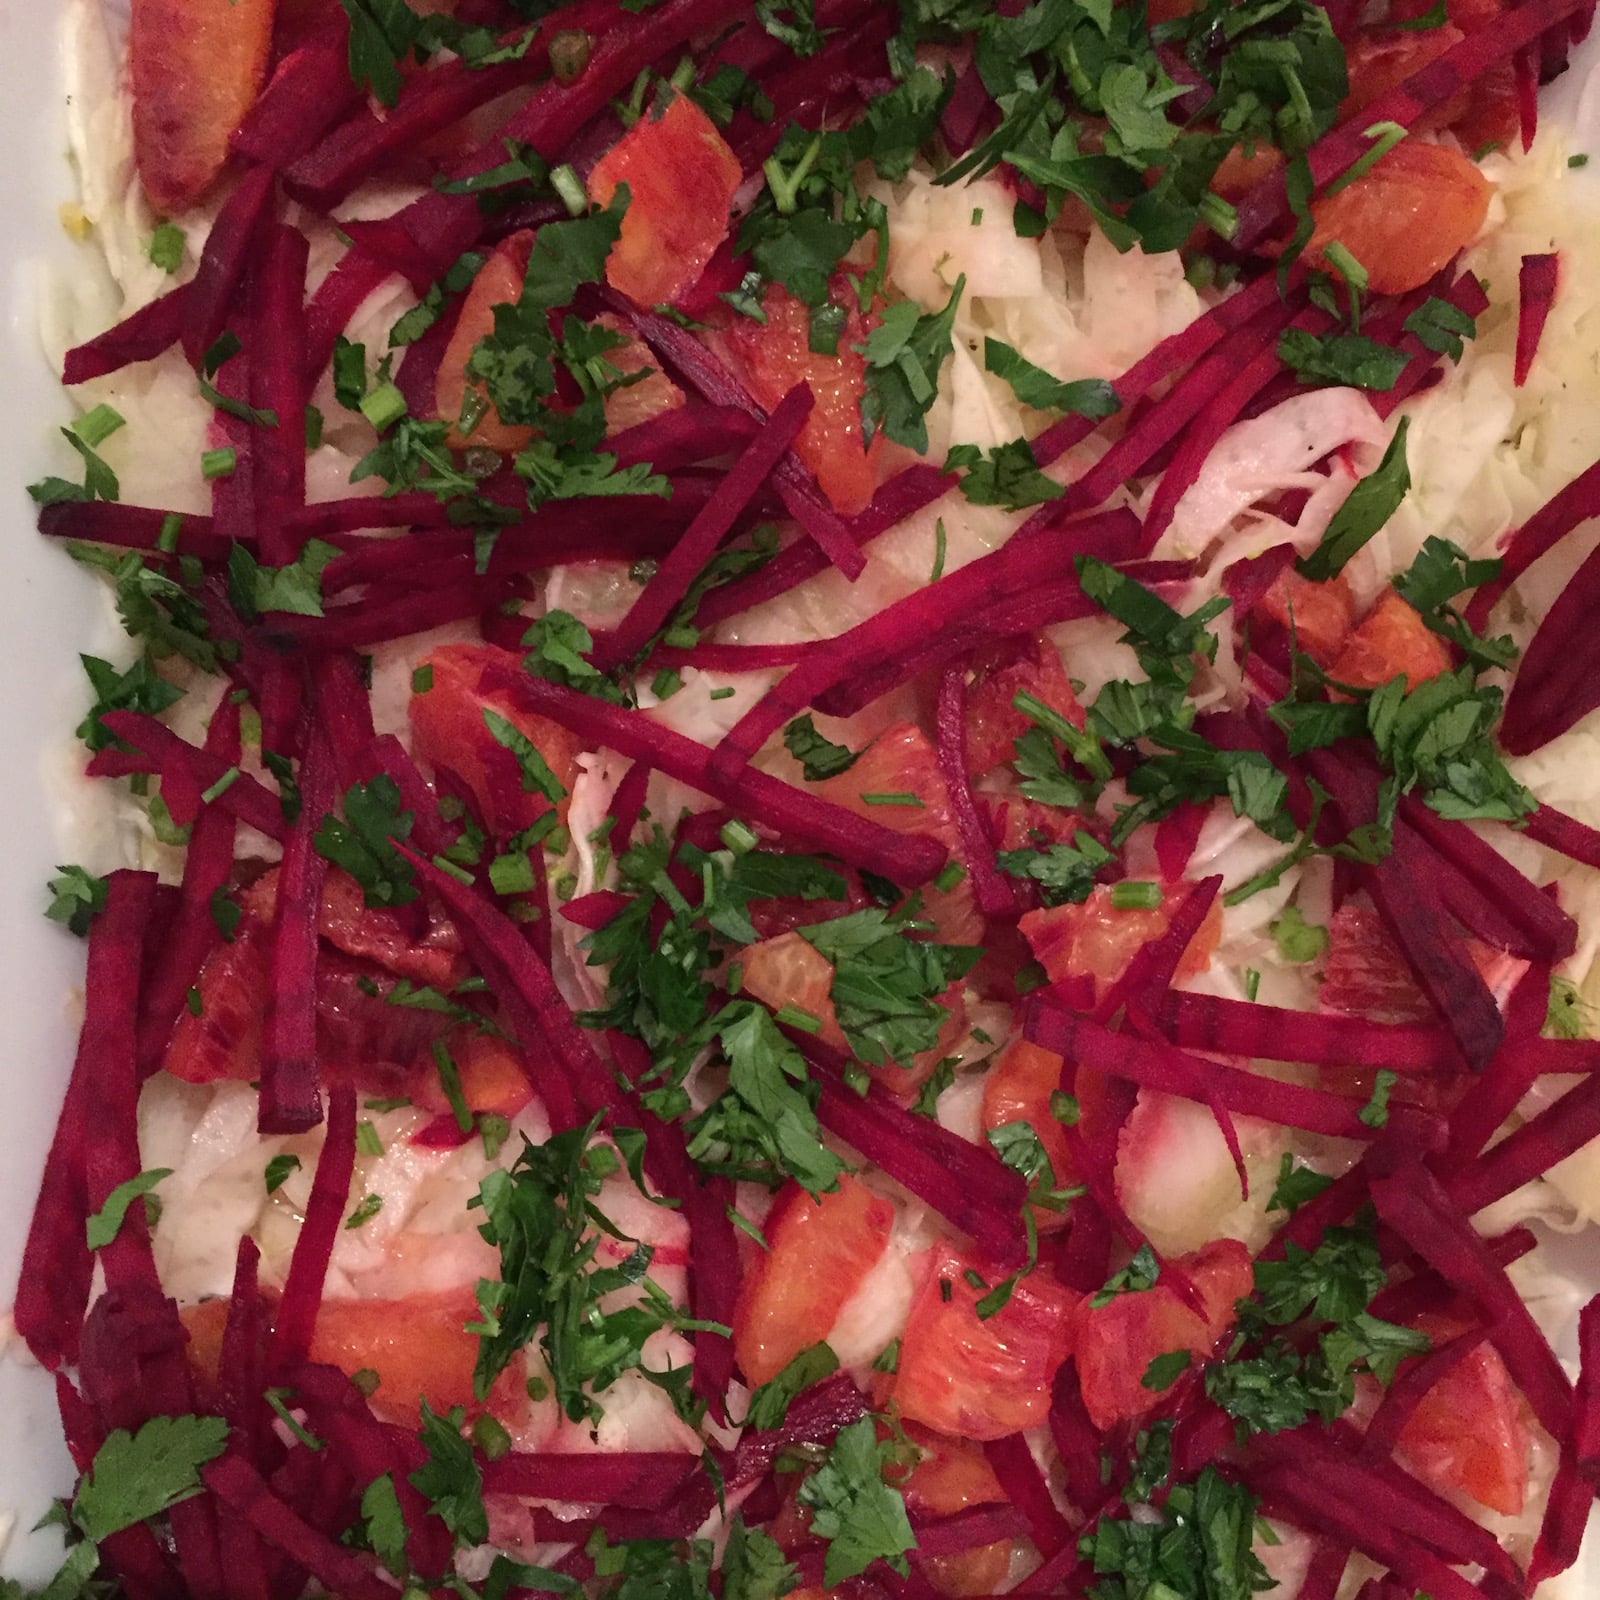 Fenchel-Rote-Beete-Blutorangen-Salat aus dem Buch Going Raw